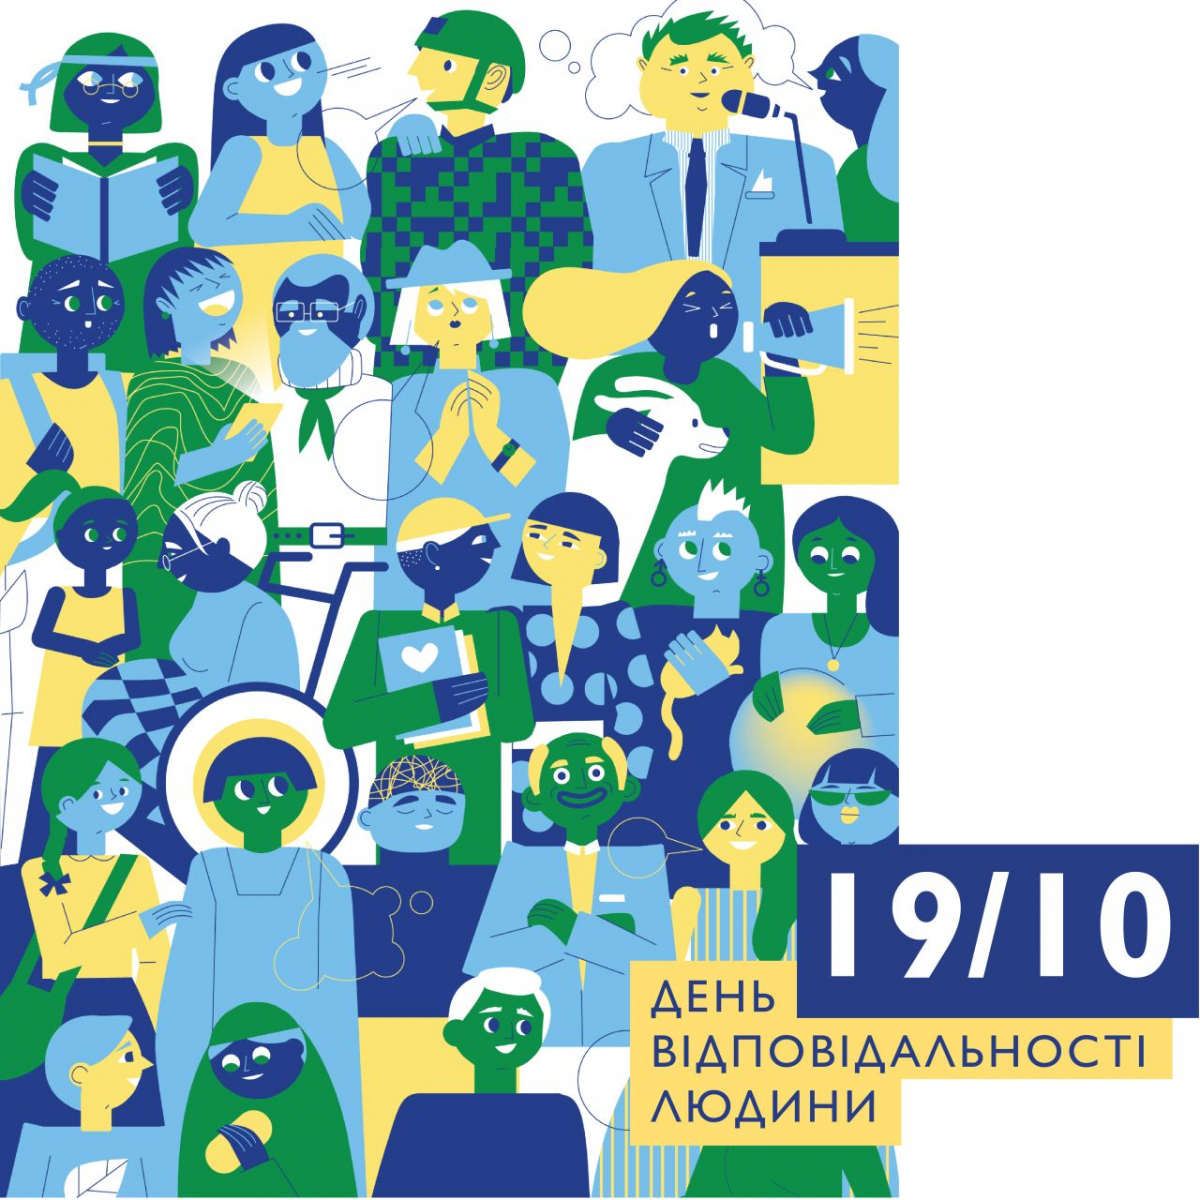 Україна втретє відзначатиме День відповідальності людини